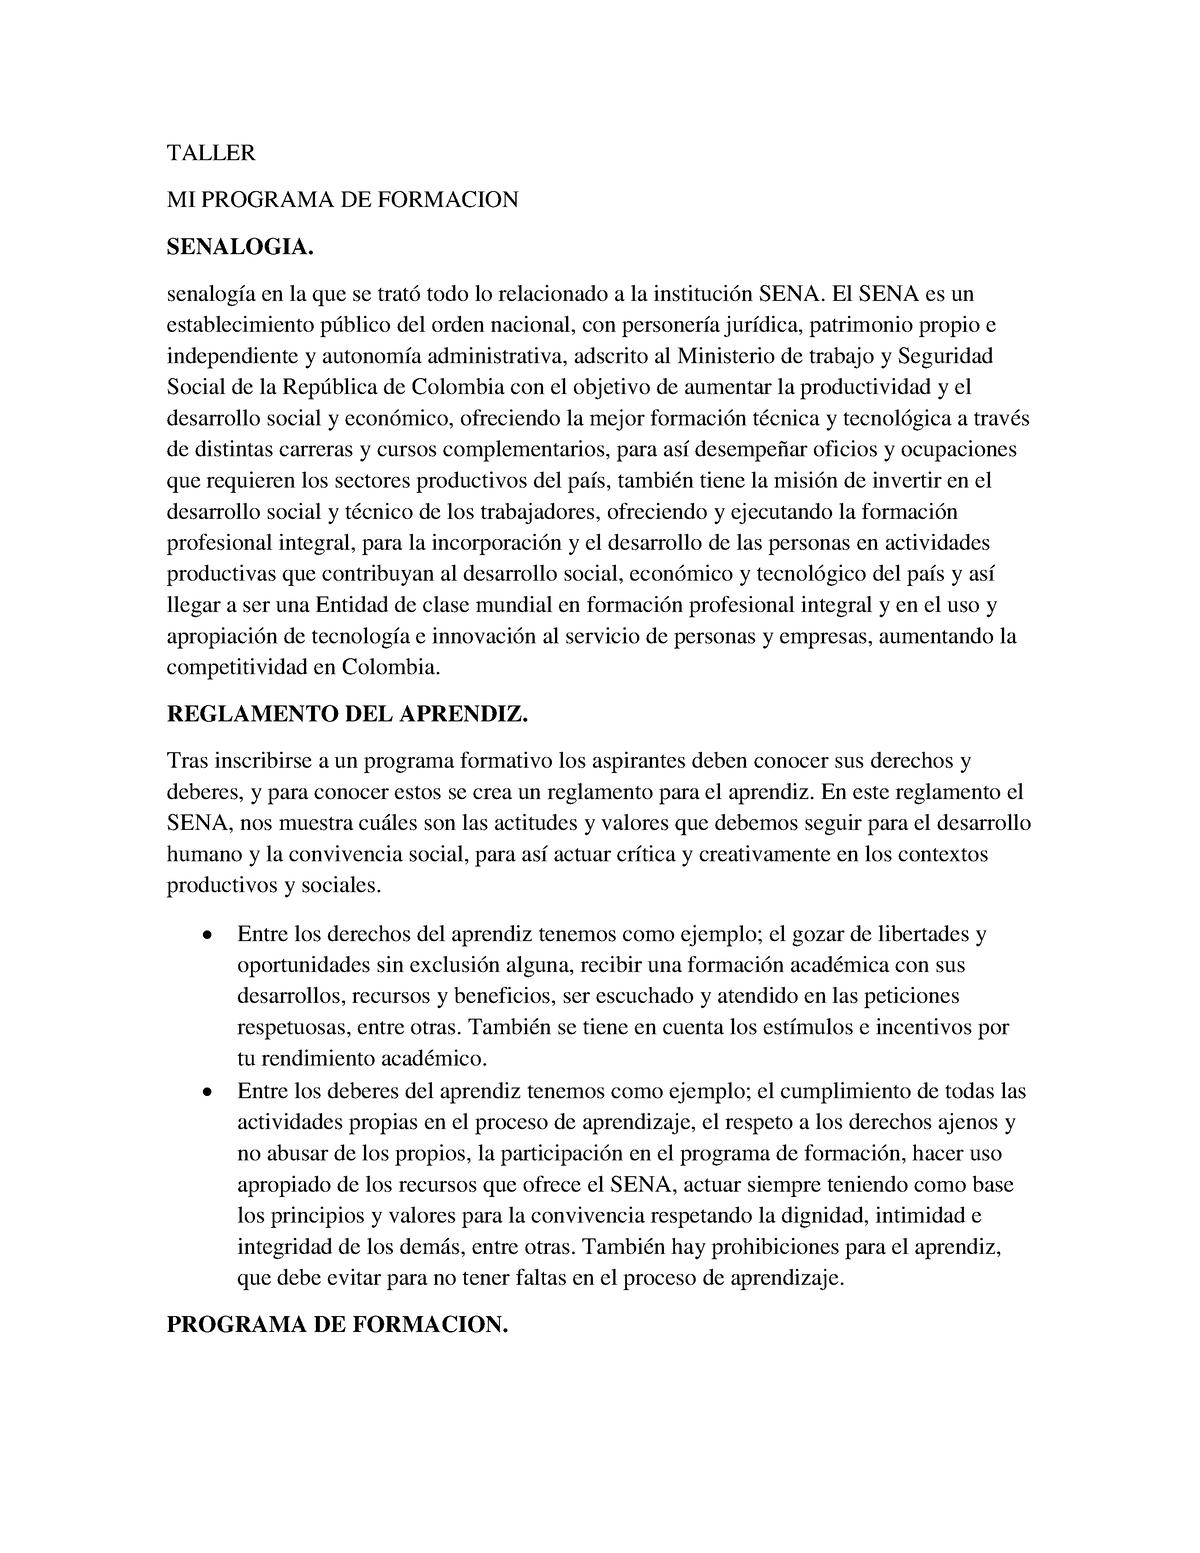 MI Programa DE Formacion - TALLER MI PROGRAMA DE FORMACION SENALOGIA ...